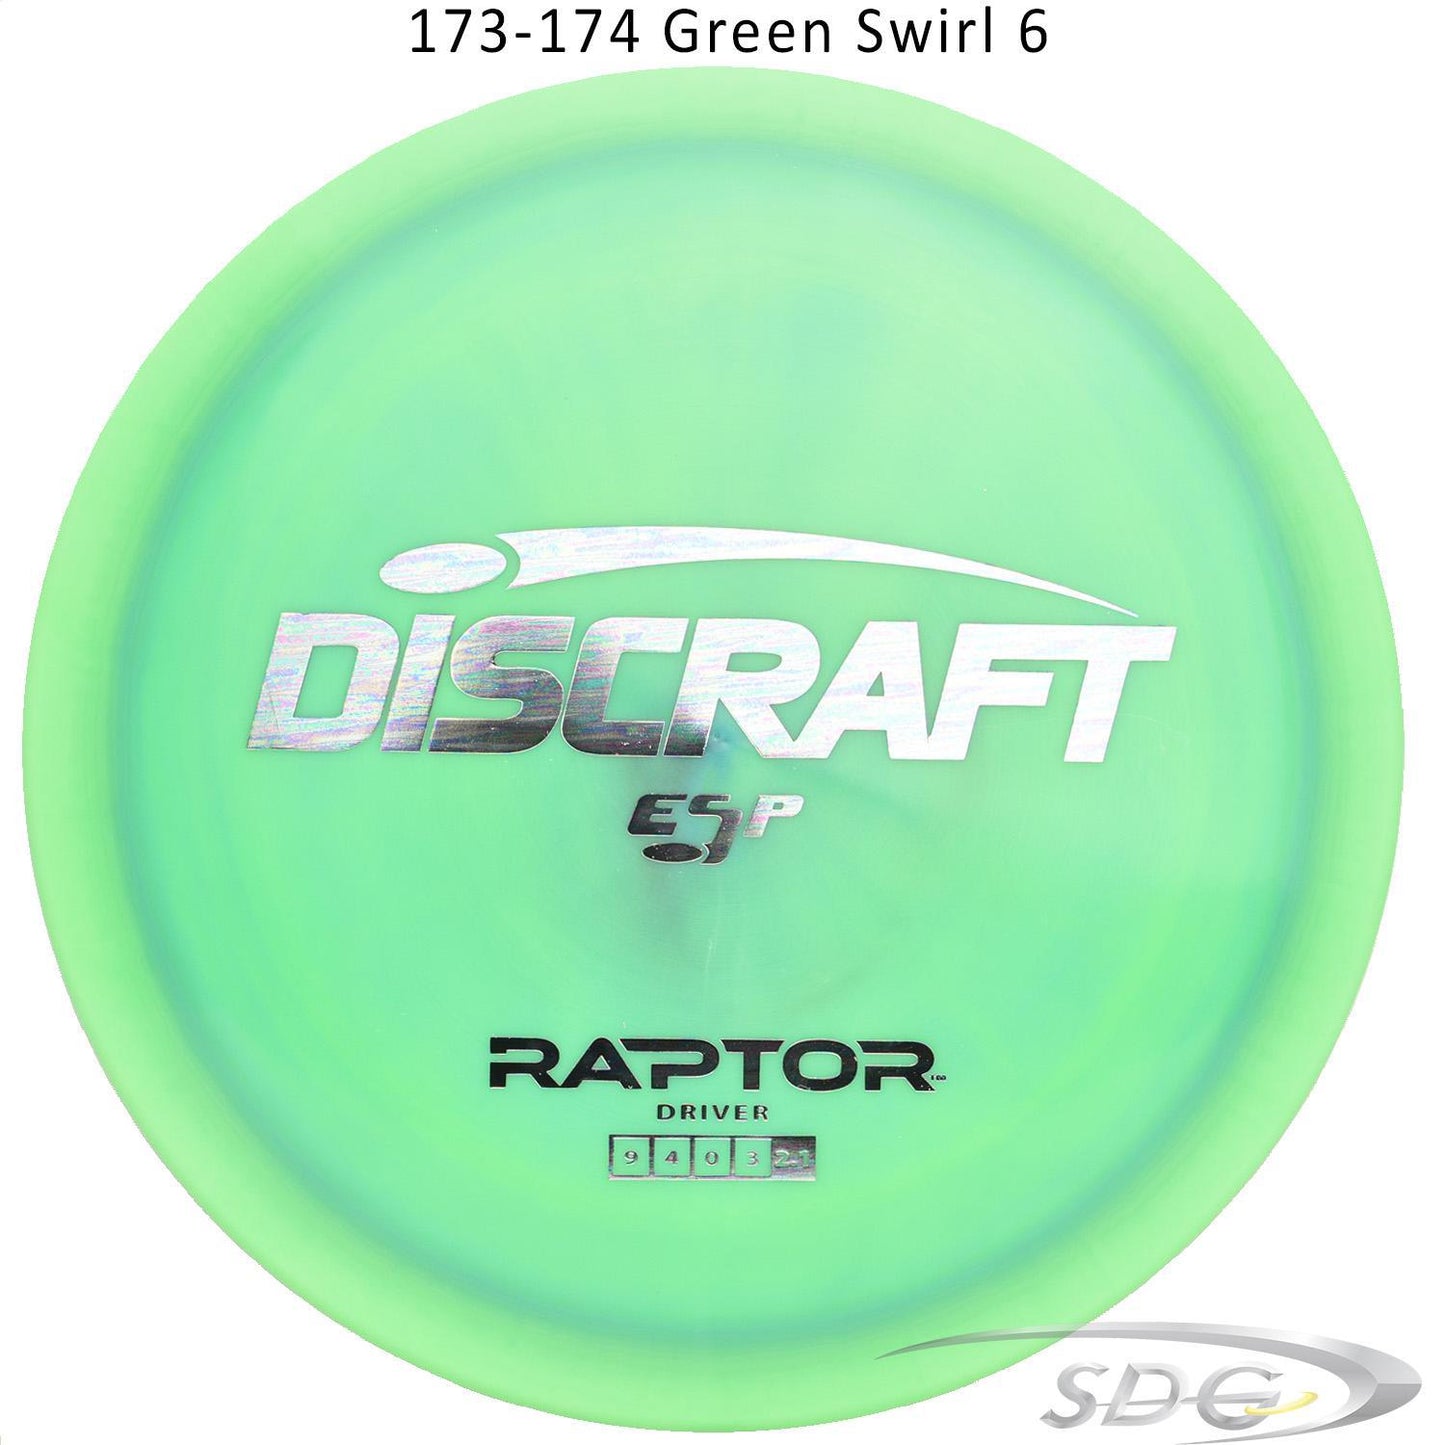 discraft-esp-raptor-disc-golf-distance-driver 173-174 Green Swirl 6